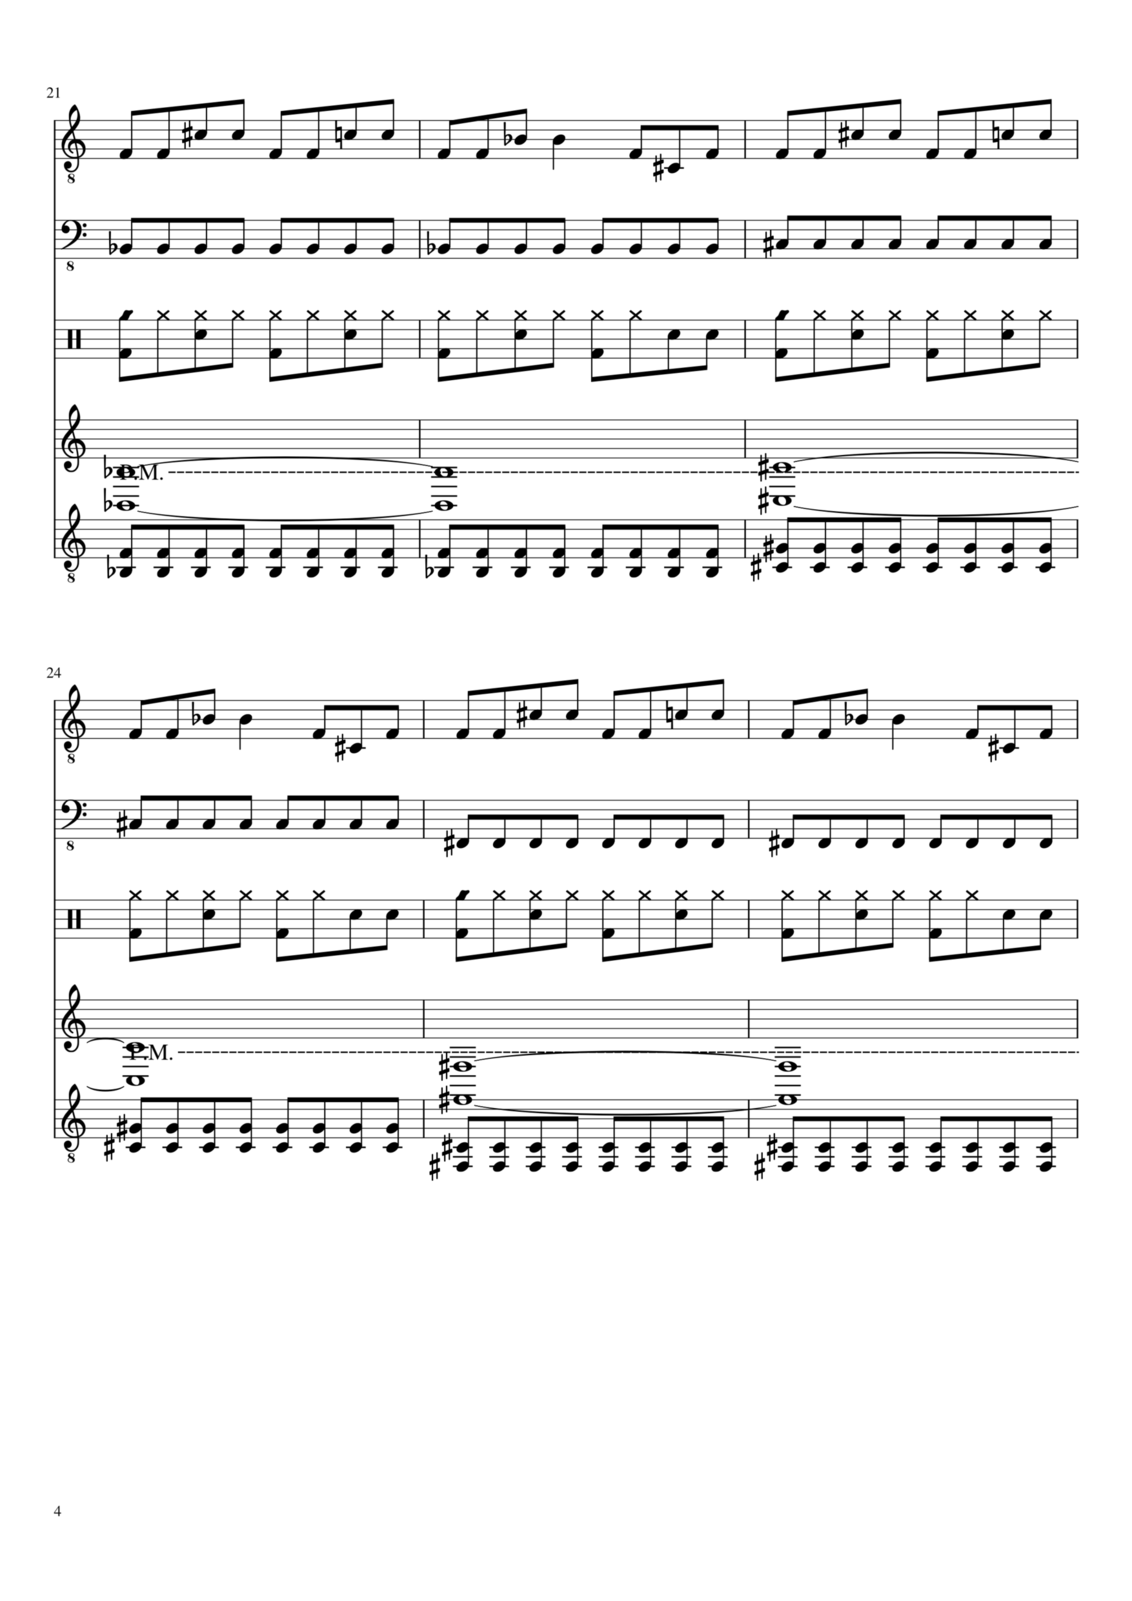 Vechnaya prizrachnaya vstrechnaya slide, Image 4